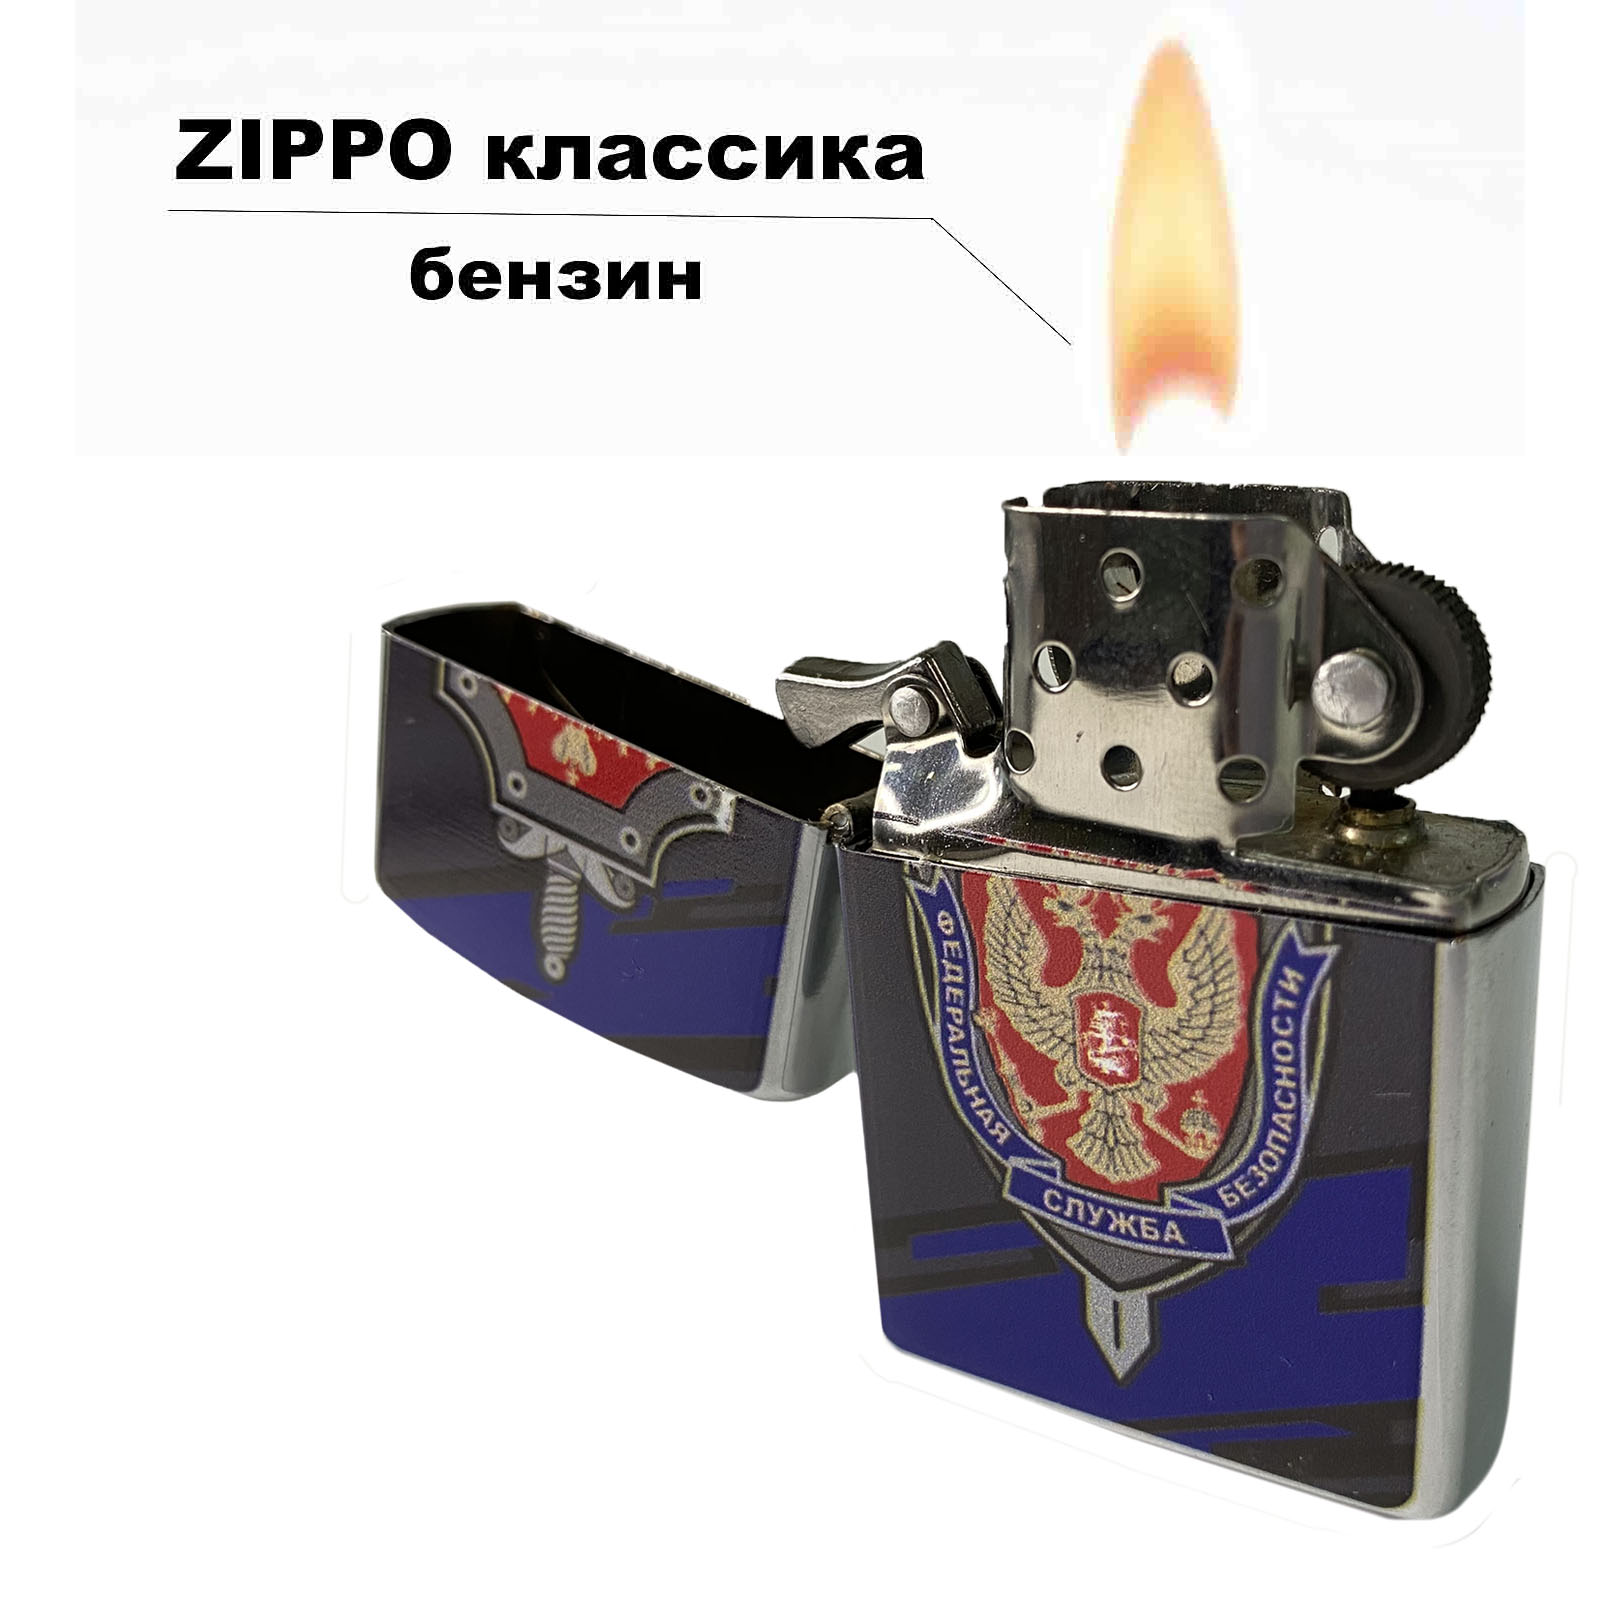 Оригинальная бензиновая зажигалка "ФСБ" 